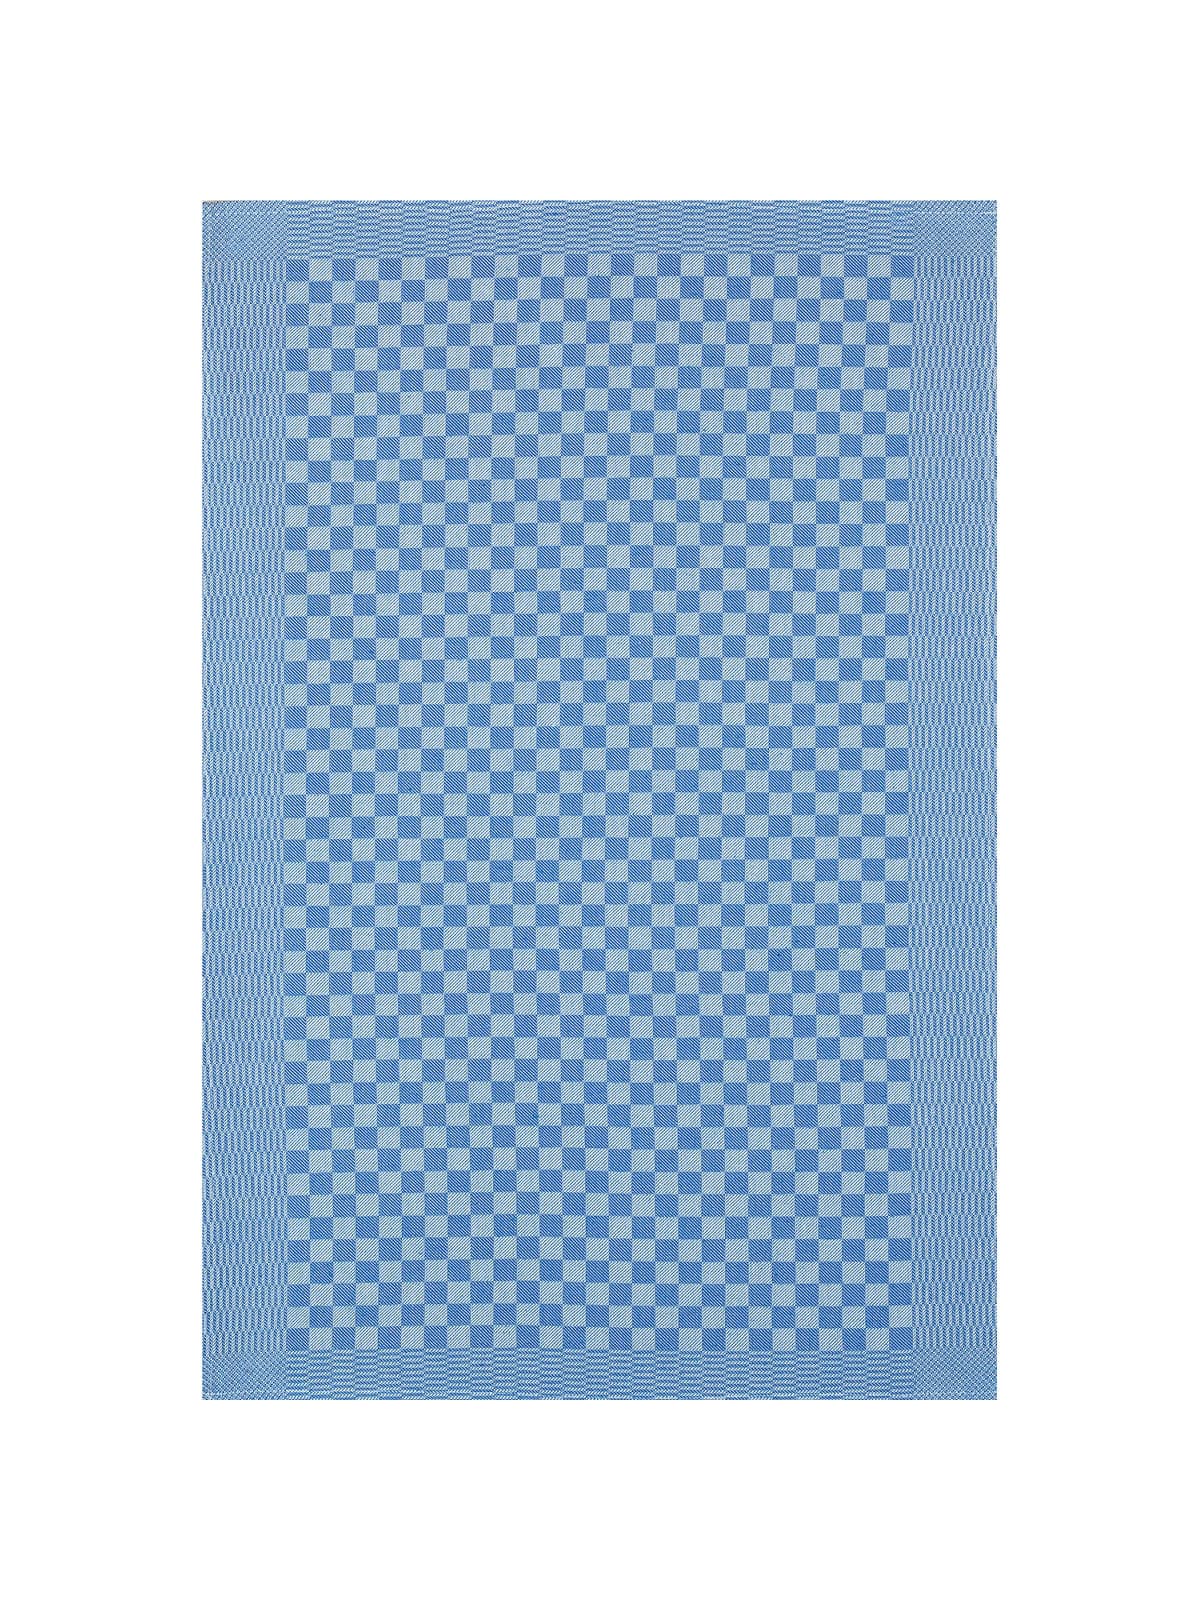 Pit Towel Blue - 12 Pcs by Kitchen & Table Linens -  ChefsCotton